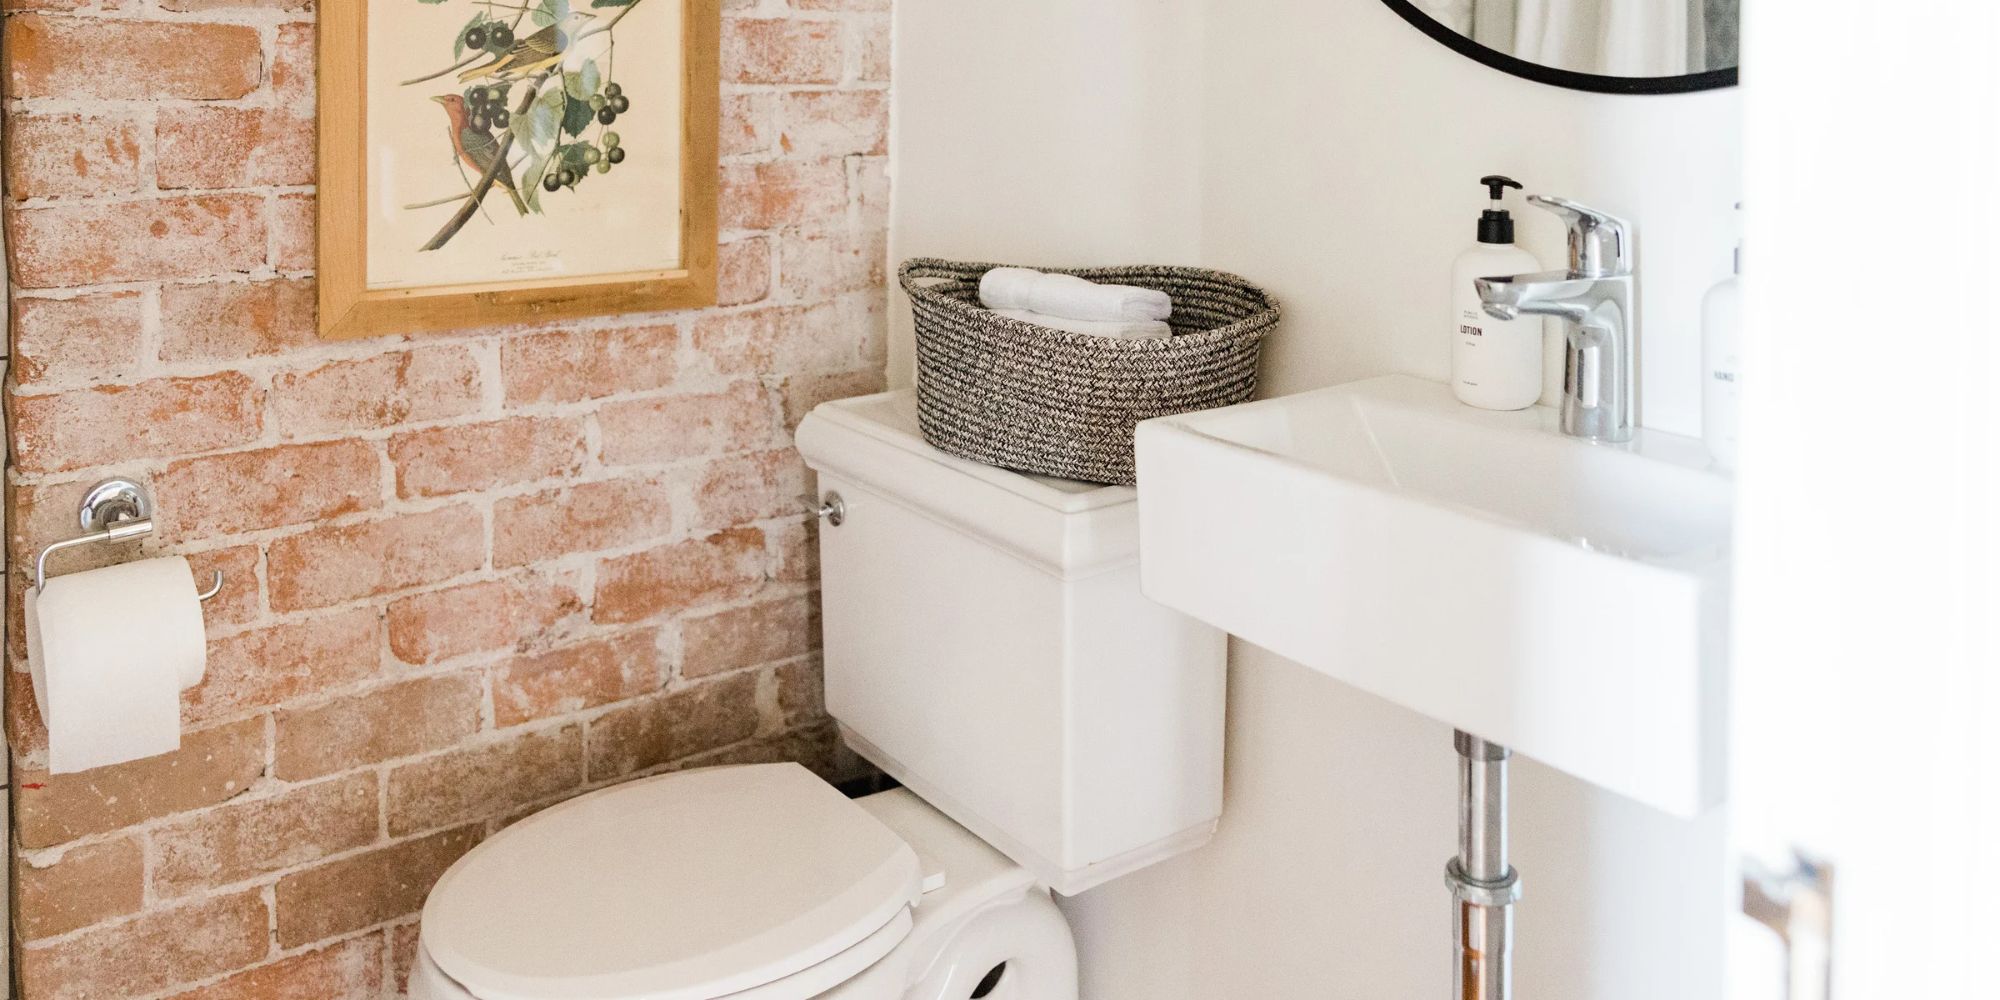 Vas WC suspendat compact pe perete: avantaje și cum să îl instalezi corect